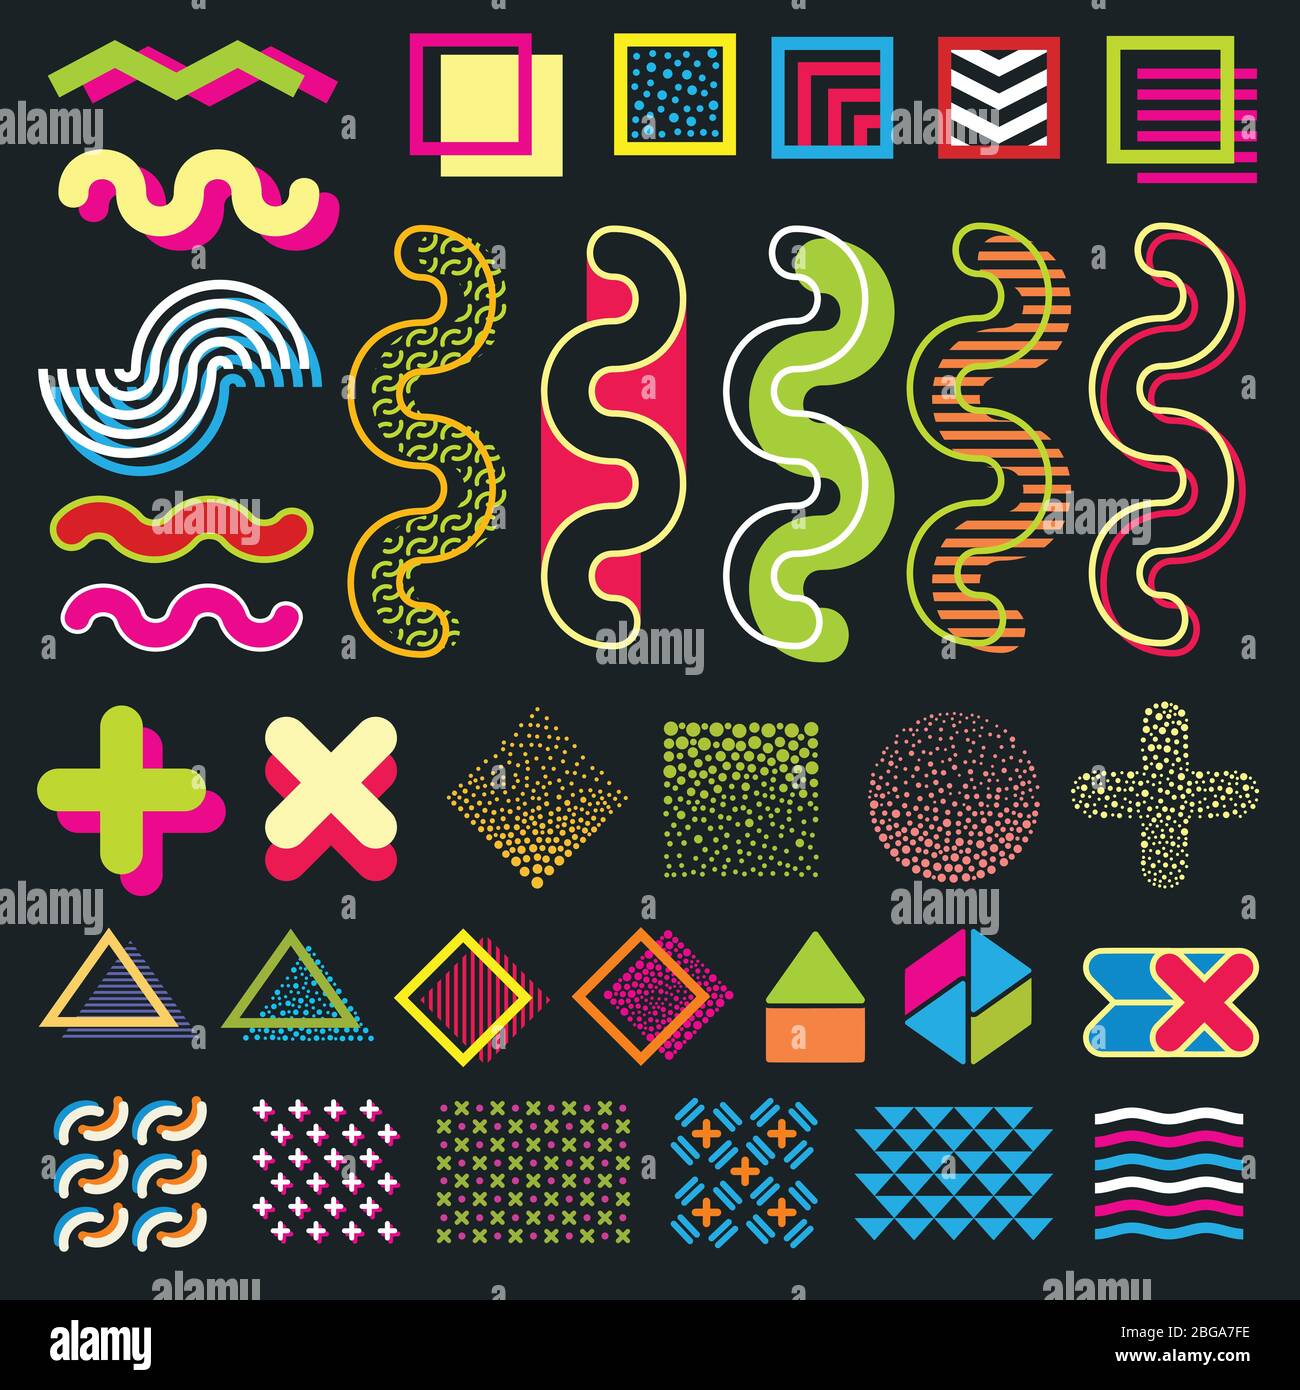 Grafica minimal a colori memphis elementi di design per motivi di moda in stile anni '80. Tratti di oggetti d'arte e hipster retrò di moda memphis. Illustrazione vettoriale Illustrazione Vettoriale